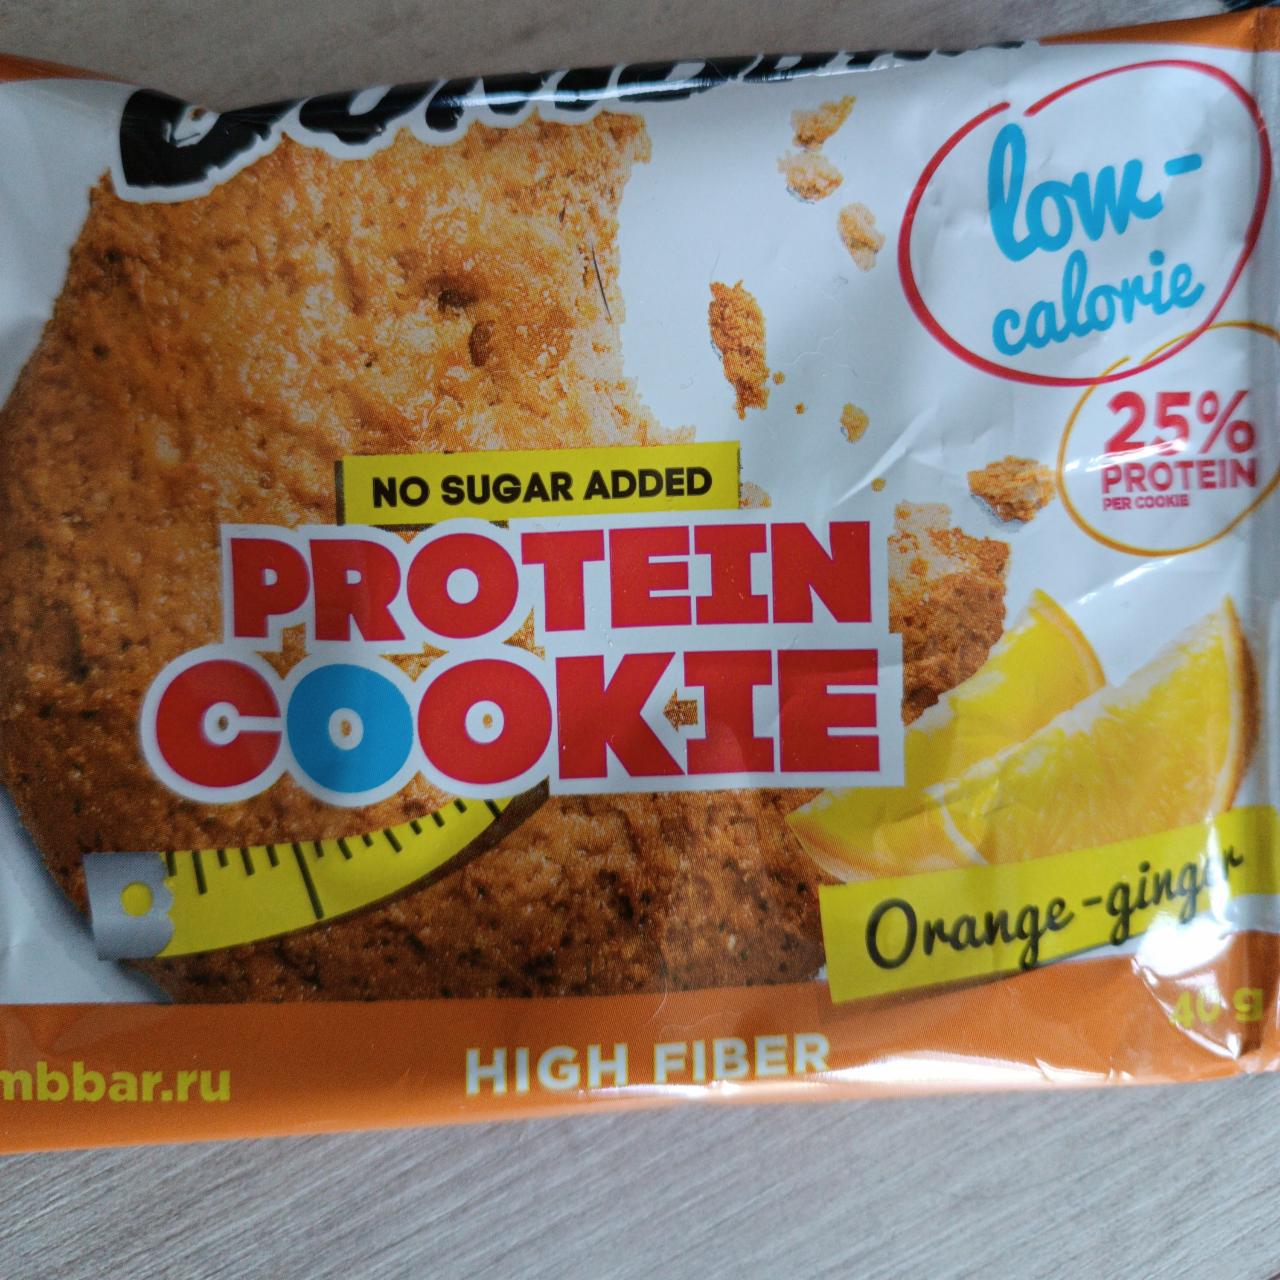 Фото - протеиновое печенье protein cookie orange-ginger Bombbar